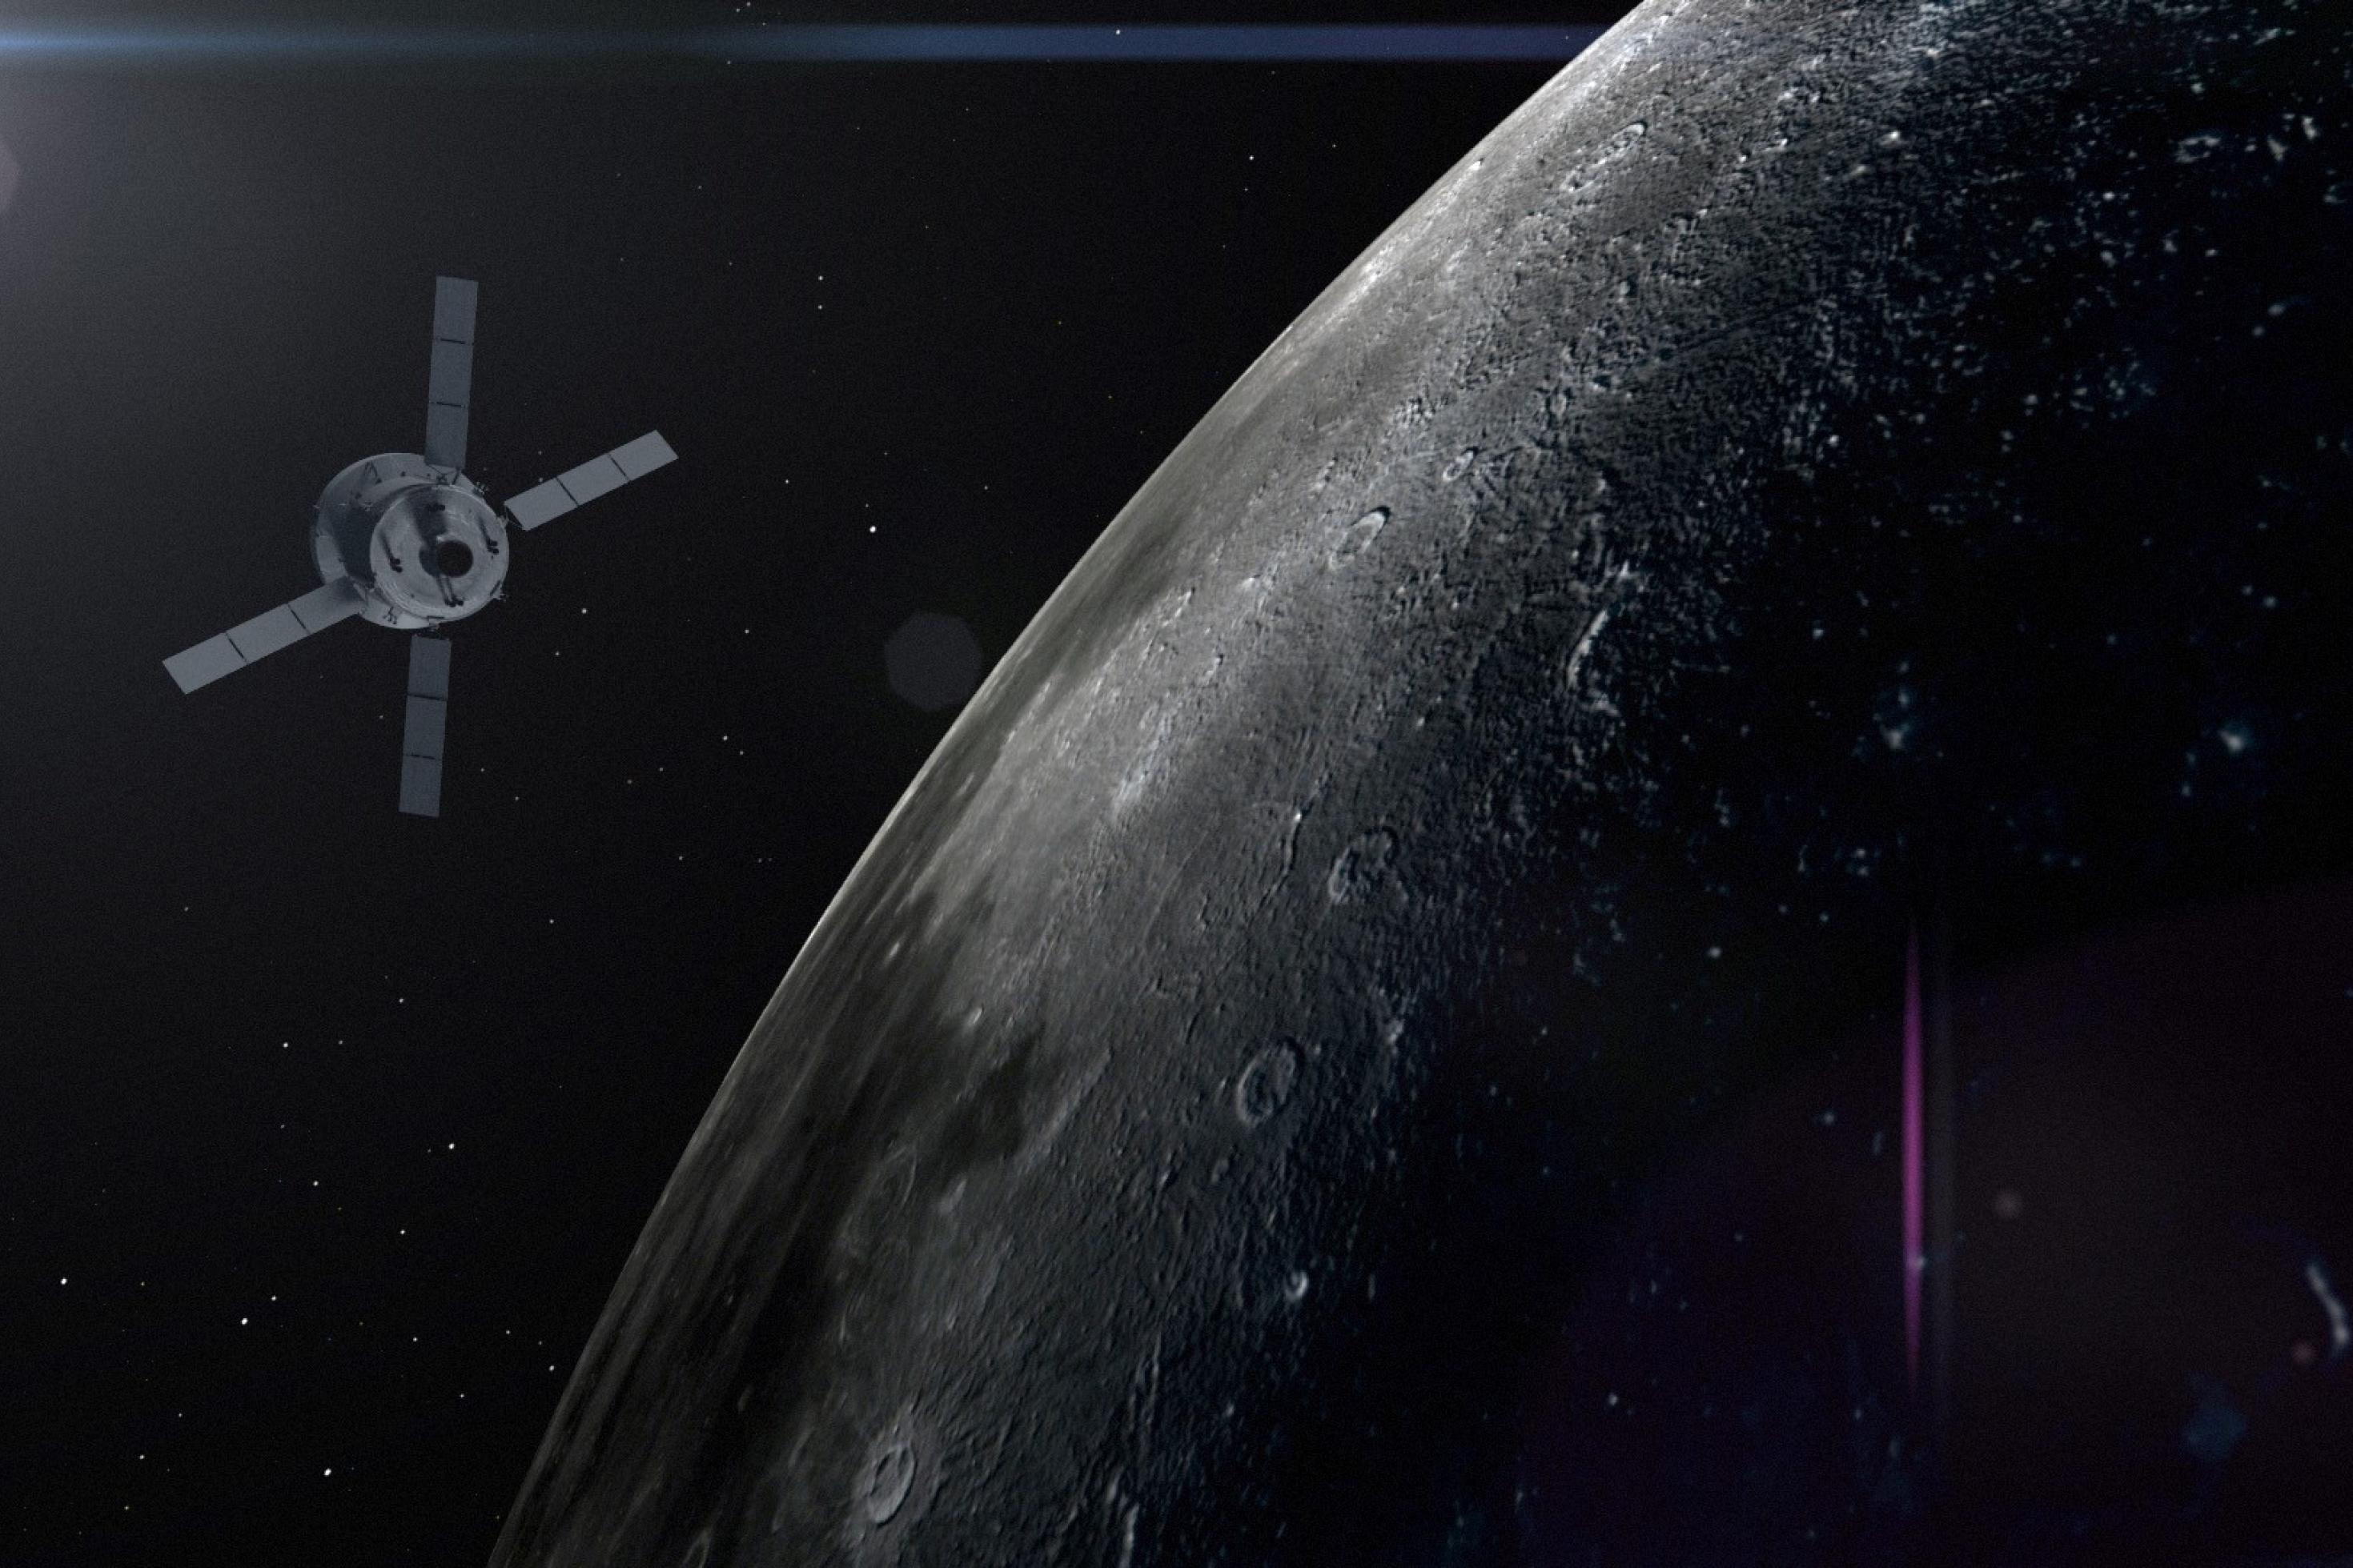 Eine künstlerische Darstellung des Orion-Raumschiffs, das am Mond vorbeifliegt. Ein Ausschnitt des Mondes ist in der rechten Bildhälfte zu sehen. Das Raumschiff befindet sich in der linken Bildhälfte vor dem Schwarz des Weltalls.